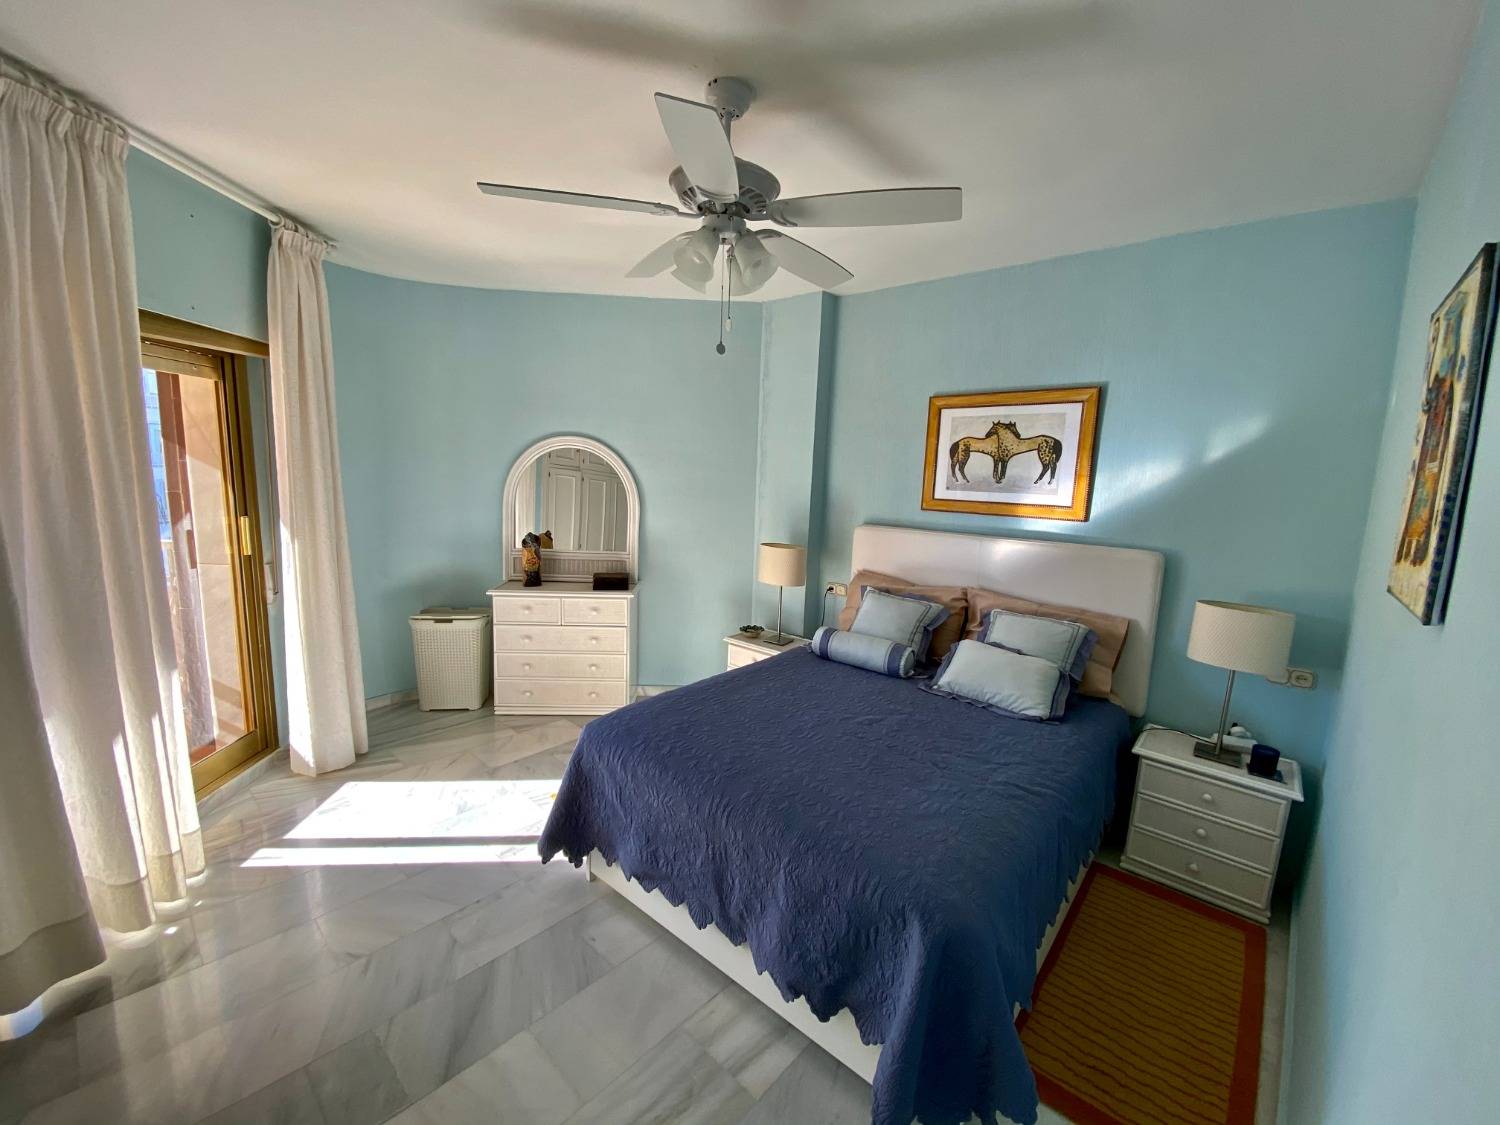 Het is uw strandhuis, in Fuengirola, 3 slaapkamers, wifi, airconditioning, geniet ervan.